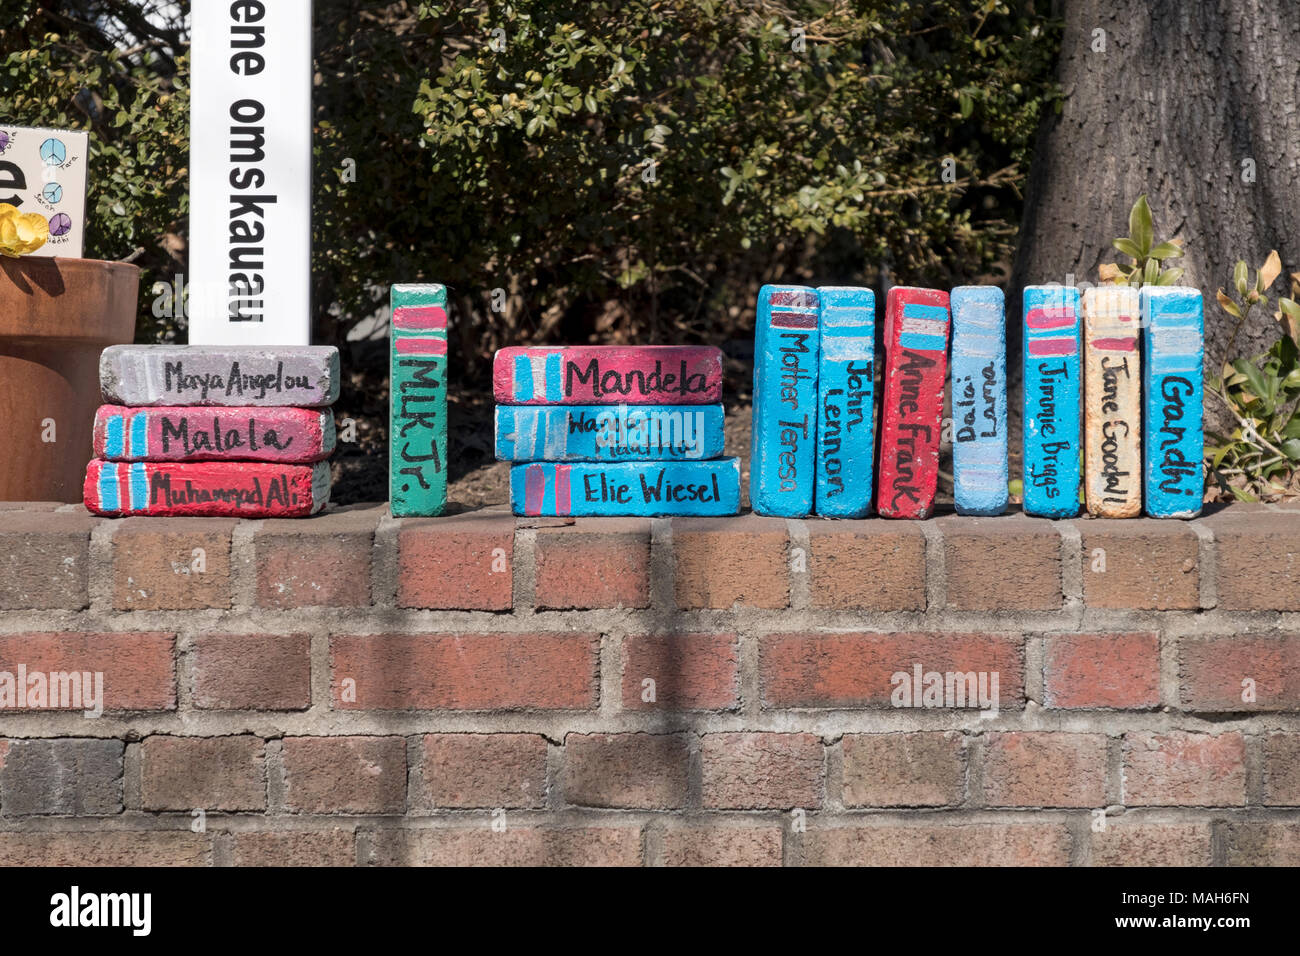 Décoration astucieuse en dehors des livres éparpillés dans Chappaqua où les briques ont été peintes de couleurs vives pour ressembler à des livres. Banque D'Images